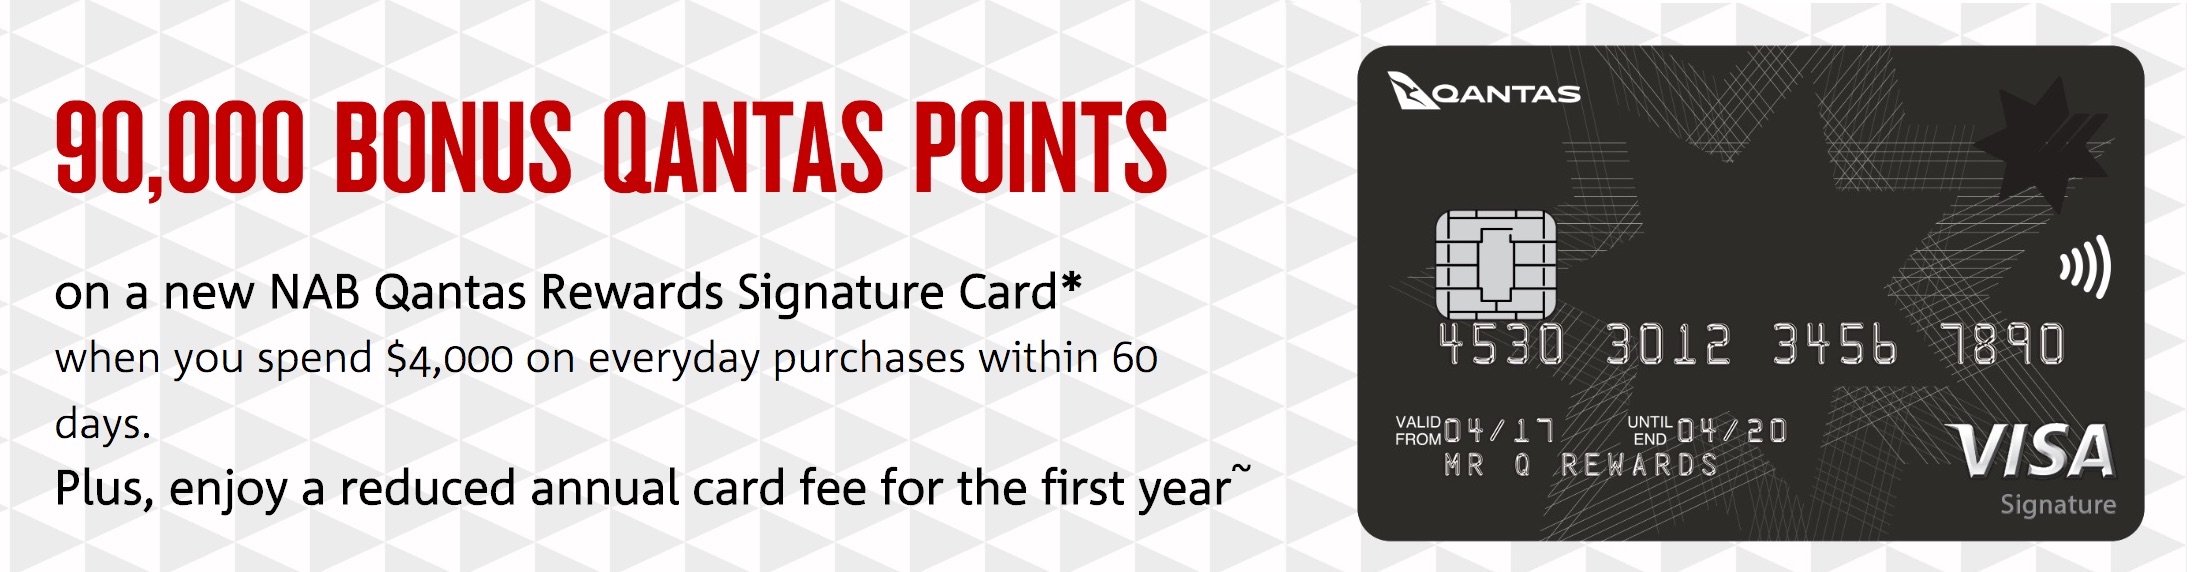 Qantas_Rewards_Signature_Card